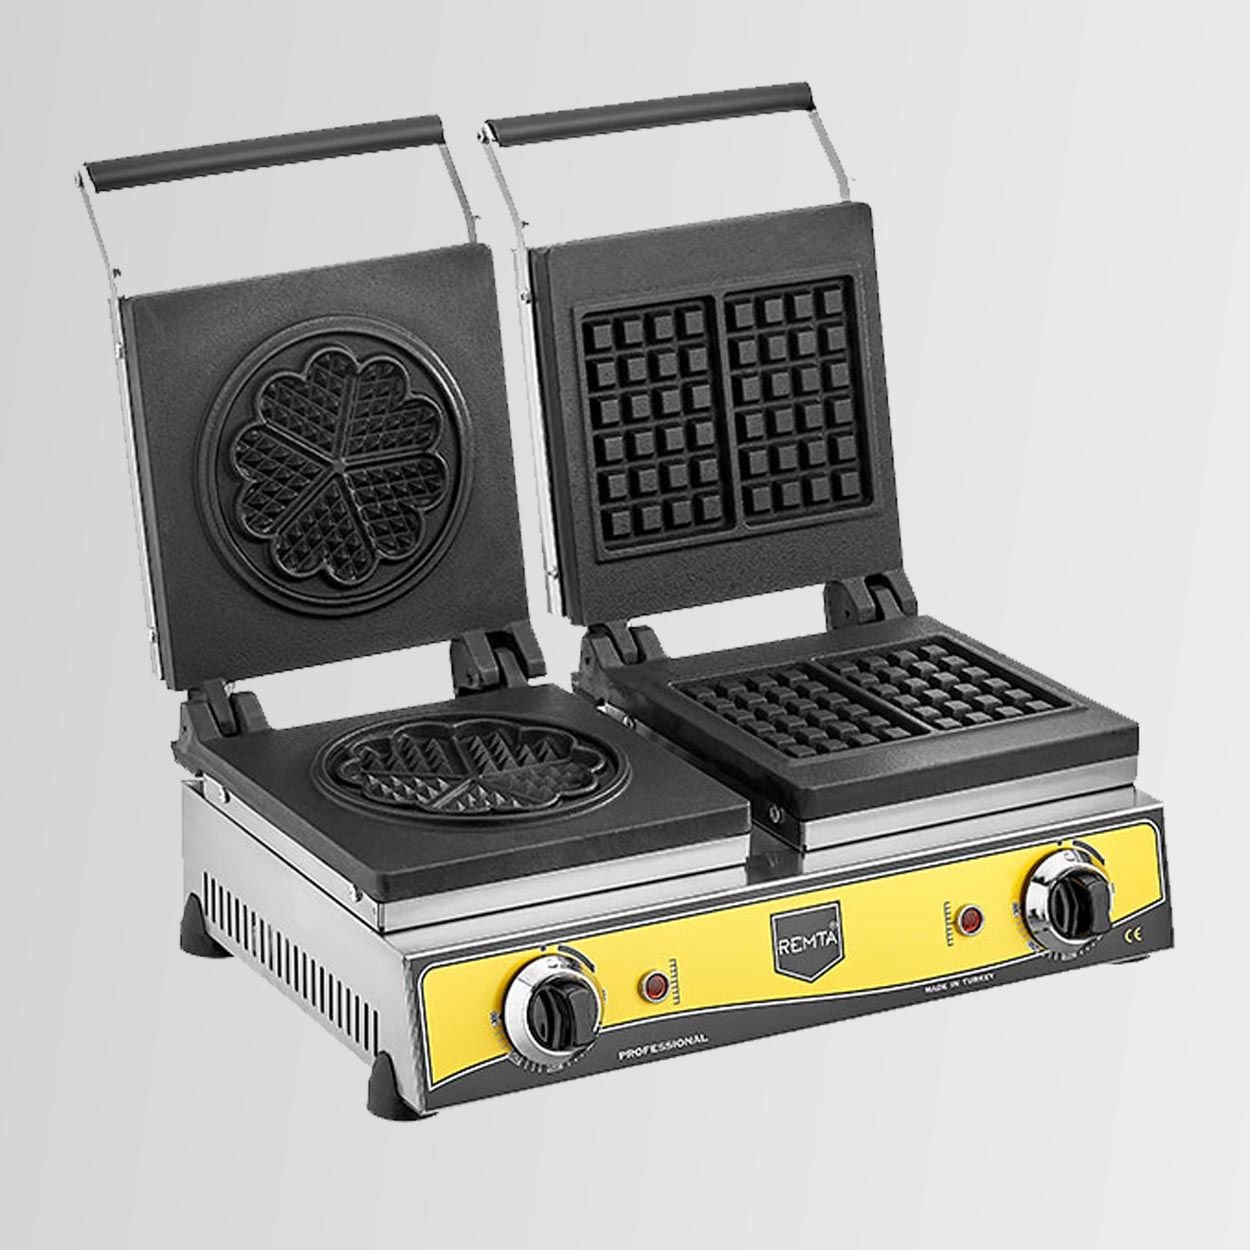 Remta W20 Sanayi Tipi Döküm Çiftli Kare + Çiçek Model (16 çap) Waffle Makinası Elektrikli